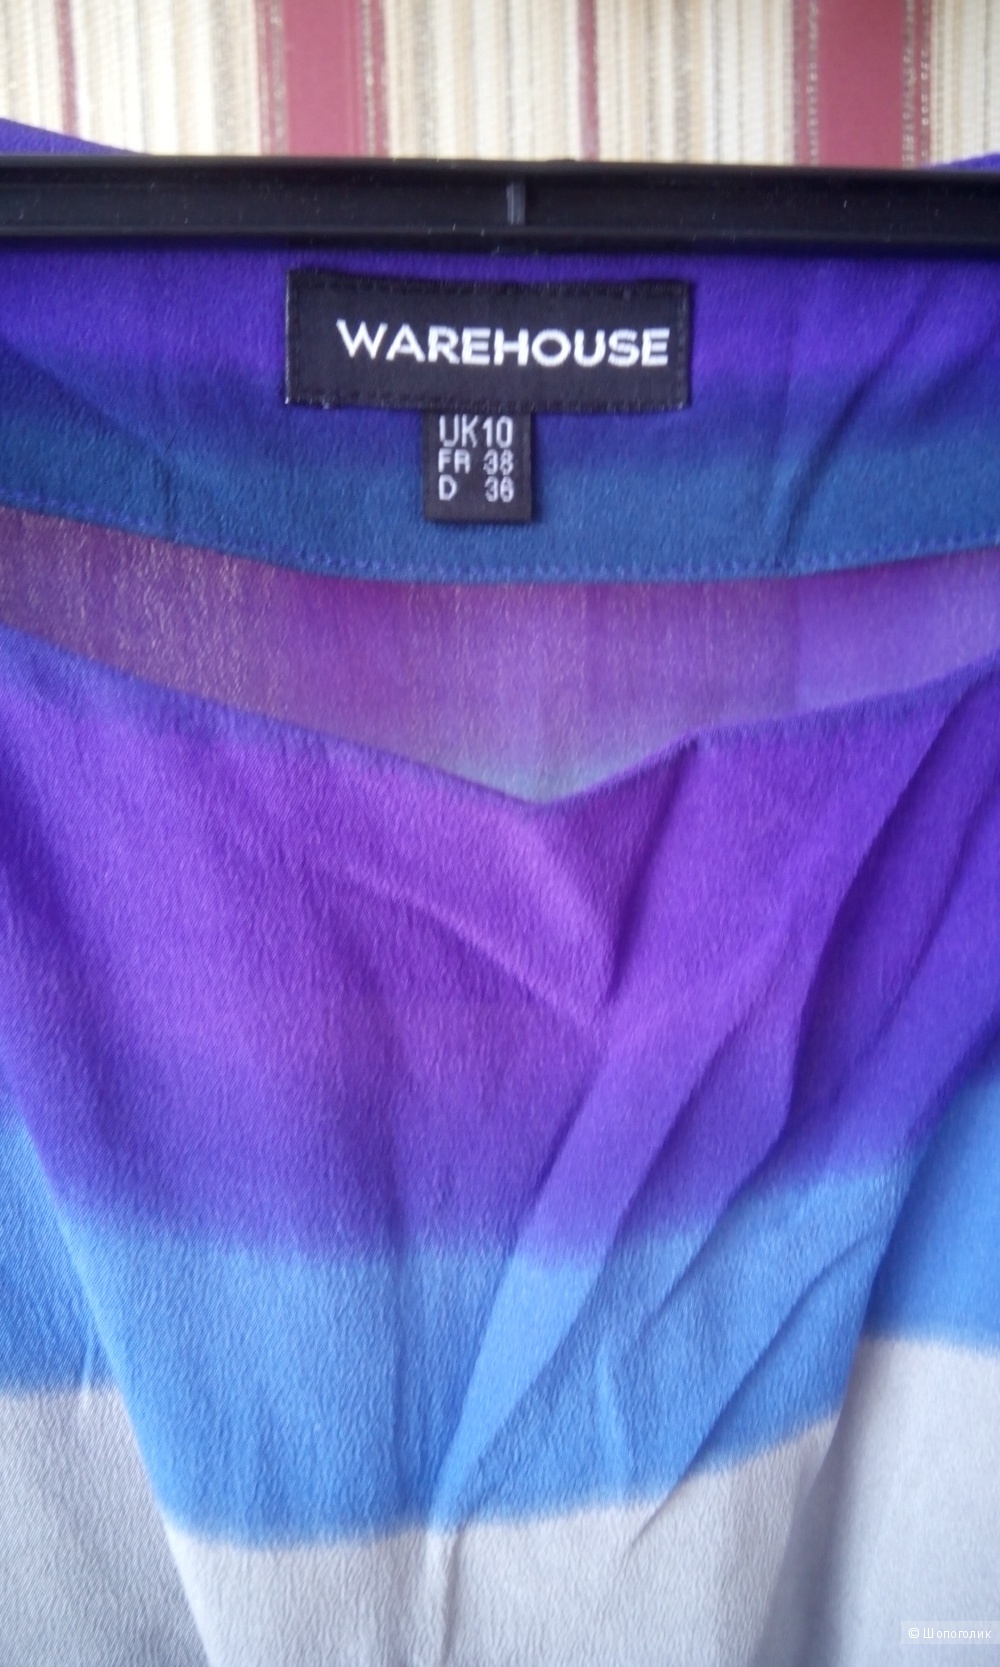 Красивая блузка из нежного натурального шелка Warehouse UK10